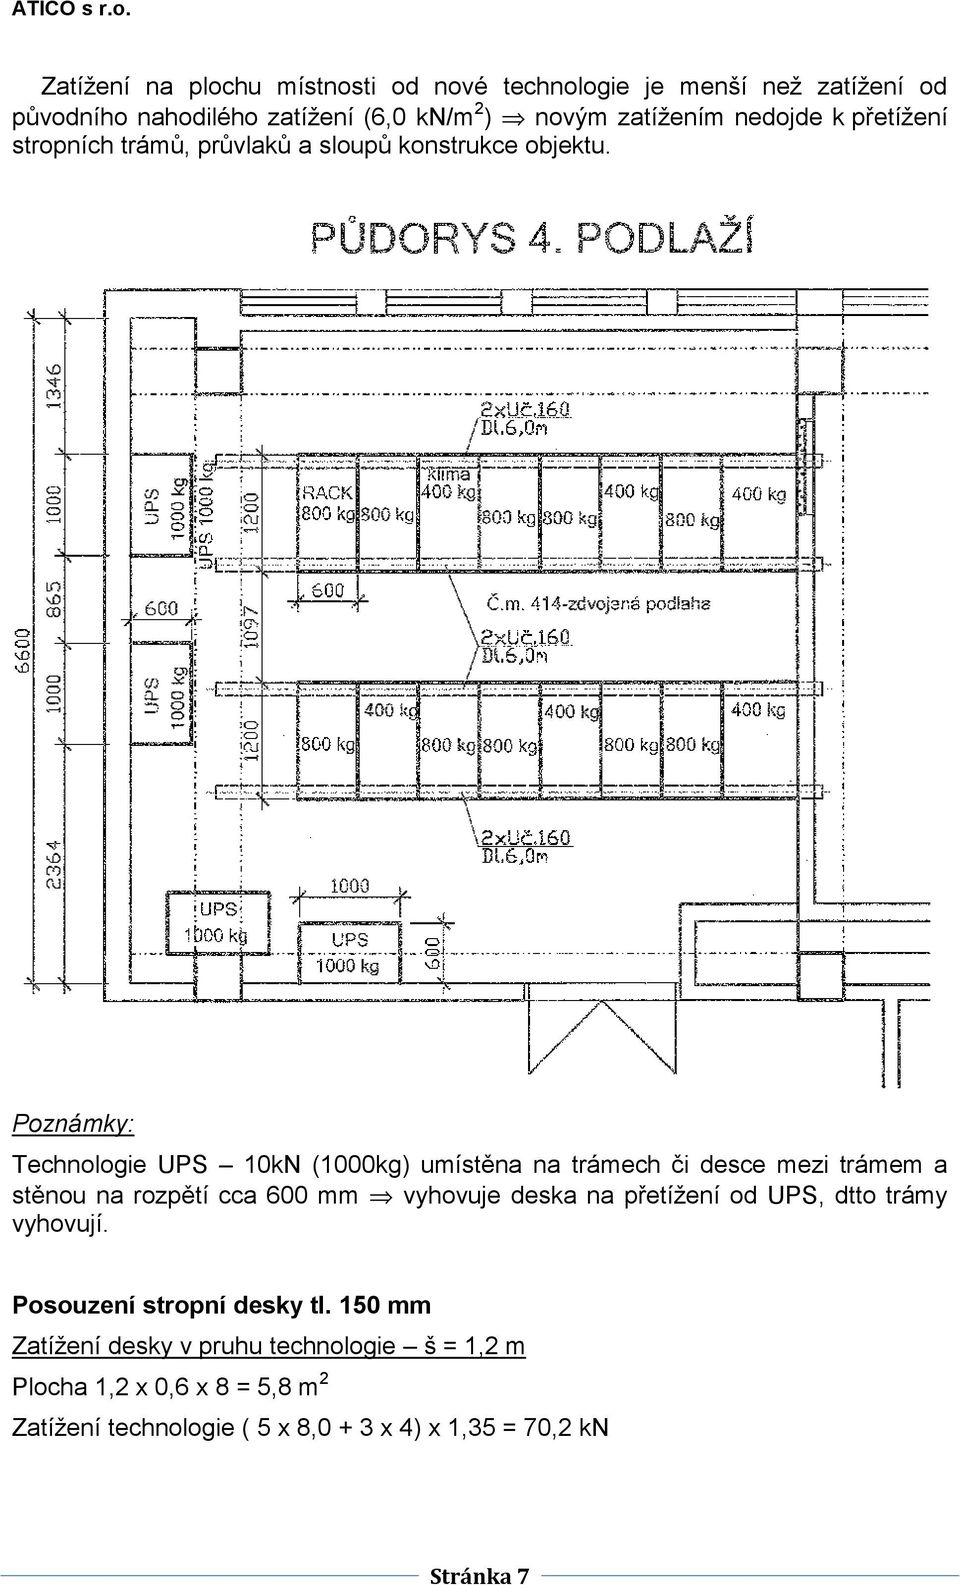 Poznámky: Technologie UPS 10kN (1000kg) umístěna na trámech či desce mezi trámem a stěnou na rozpětí cca 600 mm vyhovuje deska na